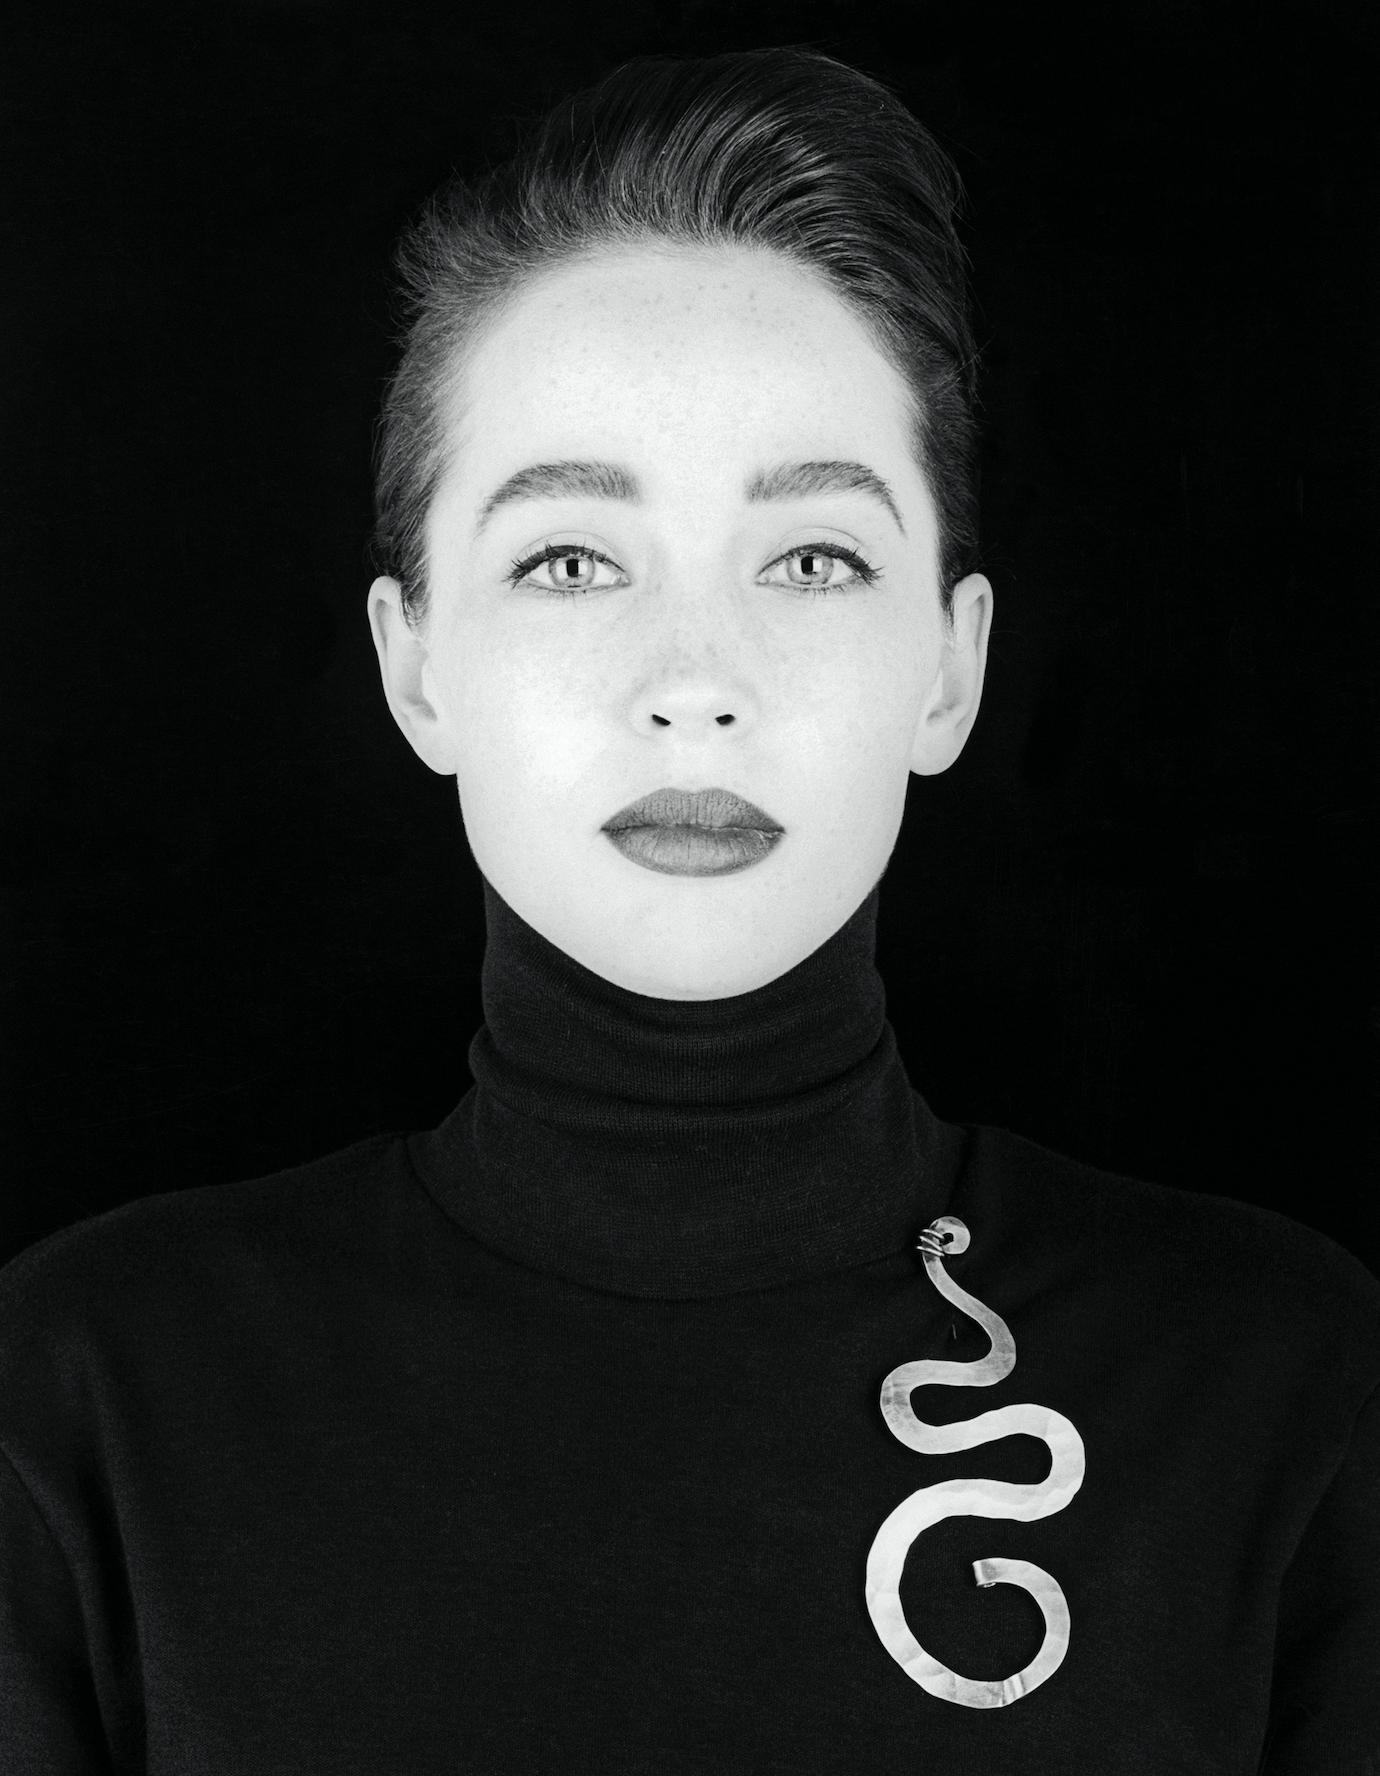 Joanne Russell, 1986